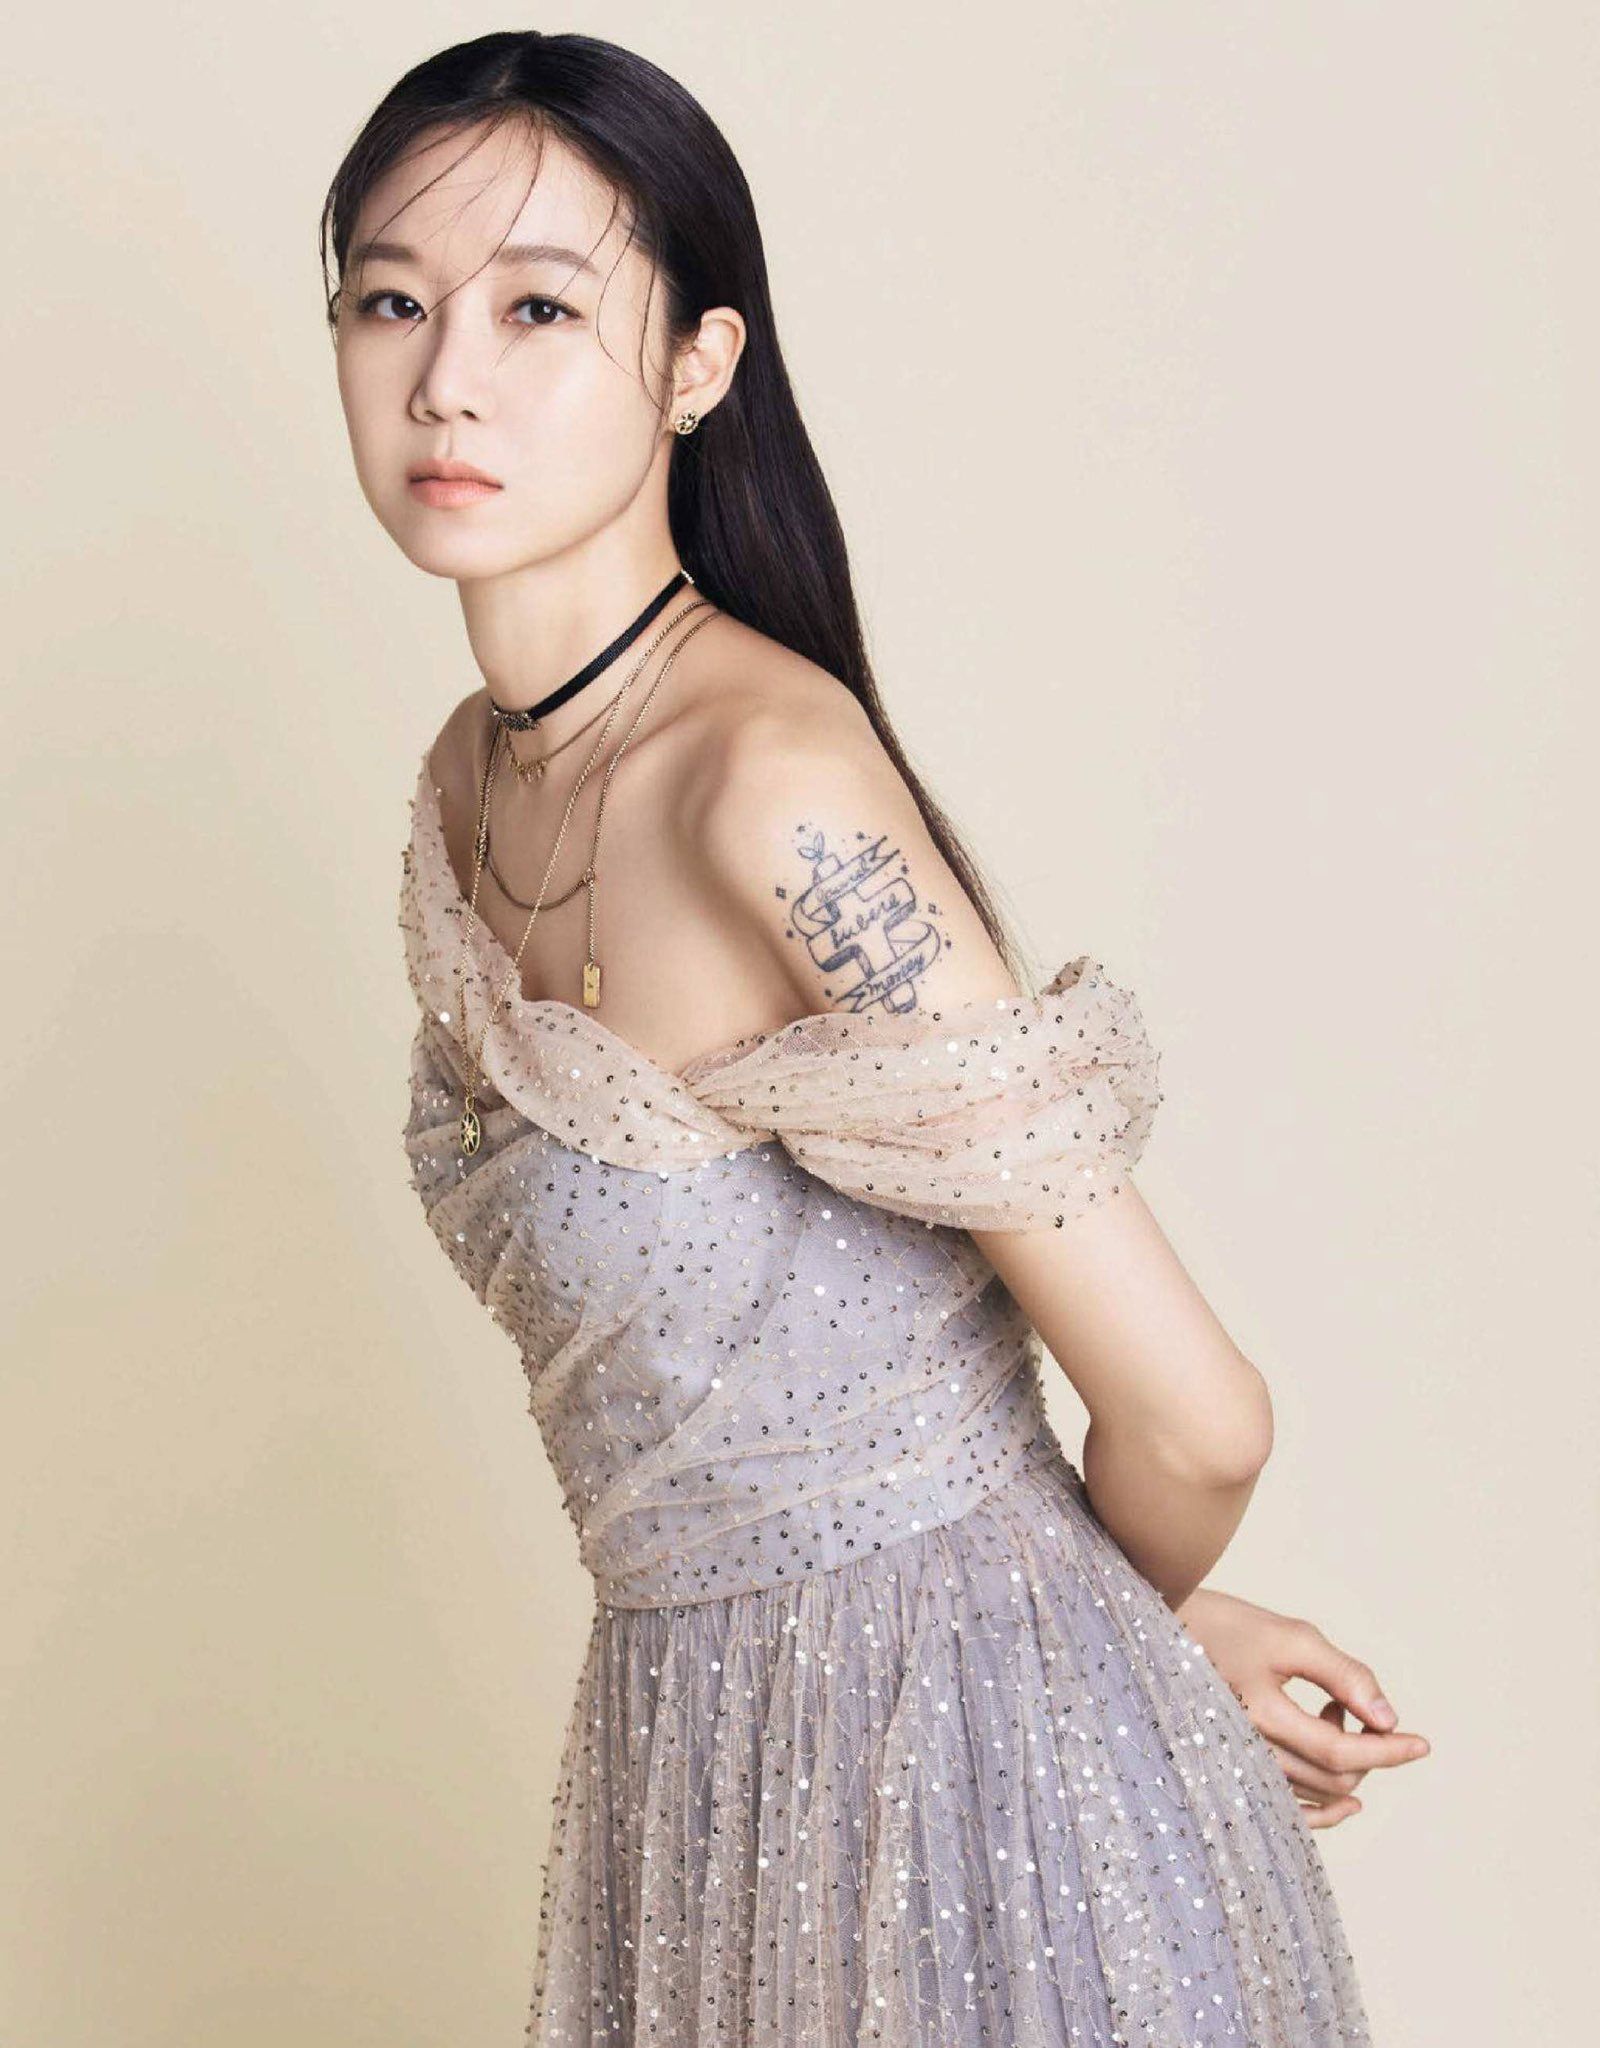 Top 10 mỹ nhân Hàn đẹp nhất tháng 9: Son Ye Jin và “cô dâu tháng 10” Gong Hyo Jin chiếm ngôi vị đầu bảng - Ảnh 2.